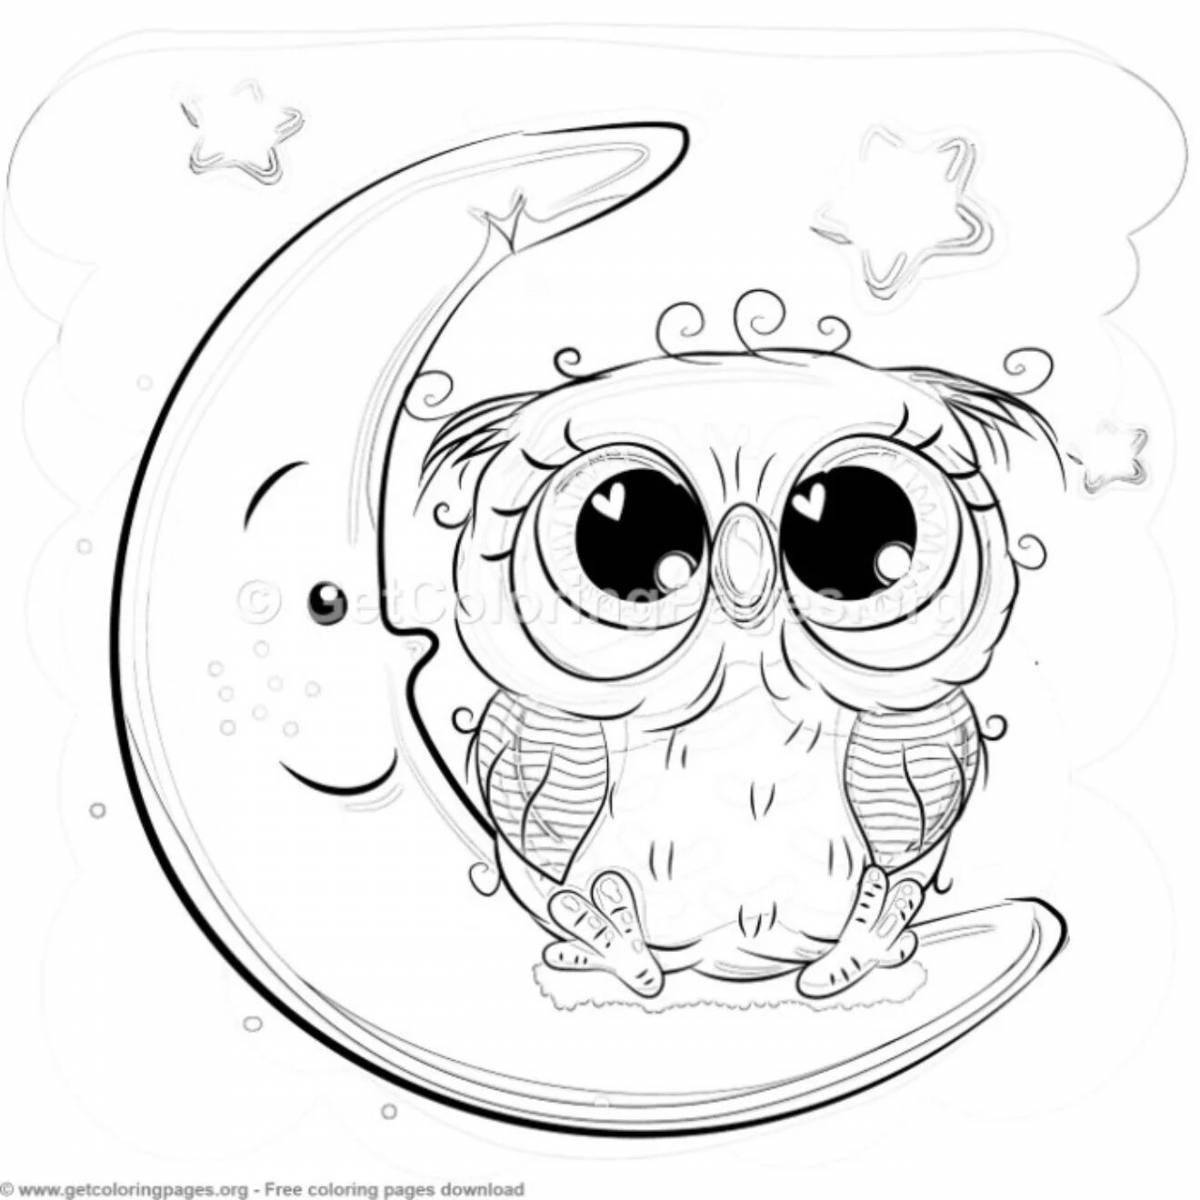 Яркая страница раскраски хип-хопа owlet